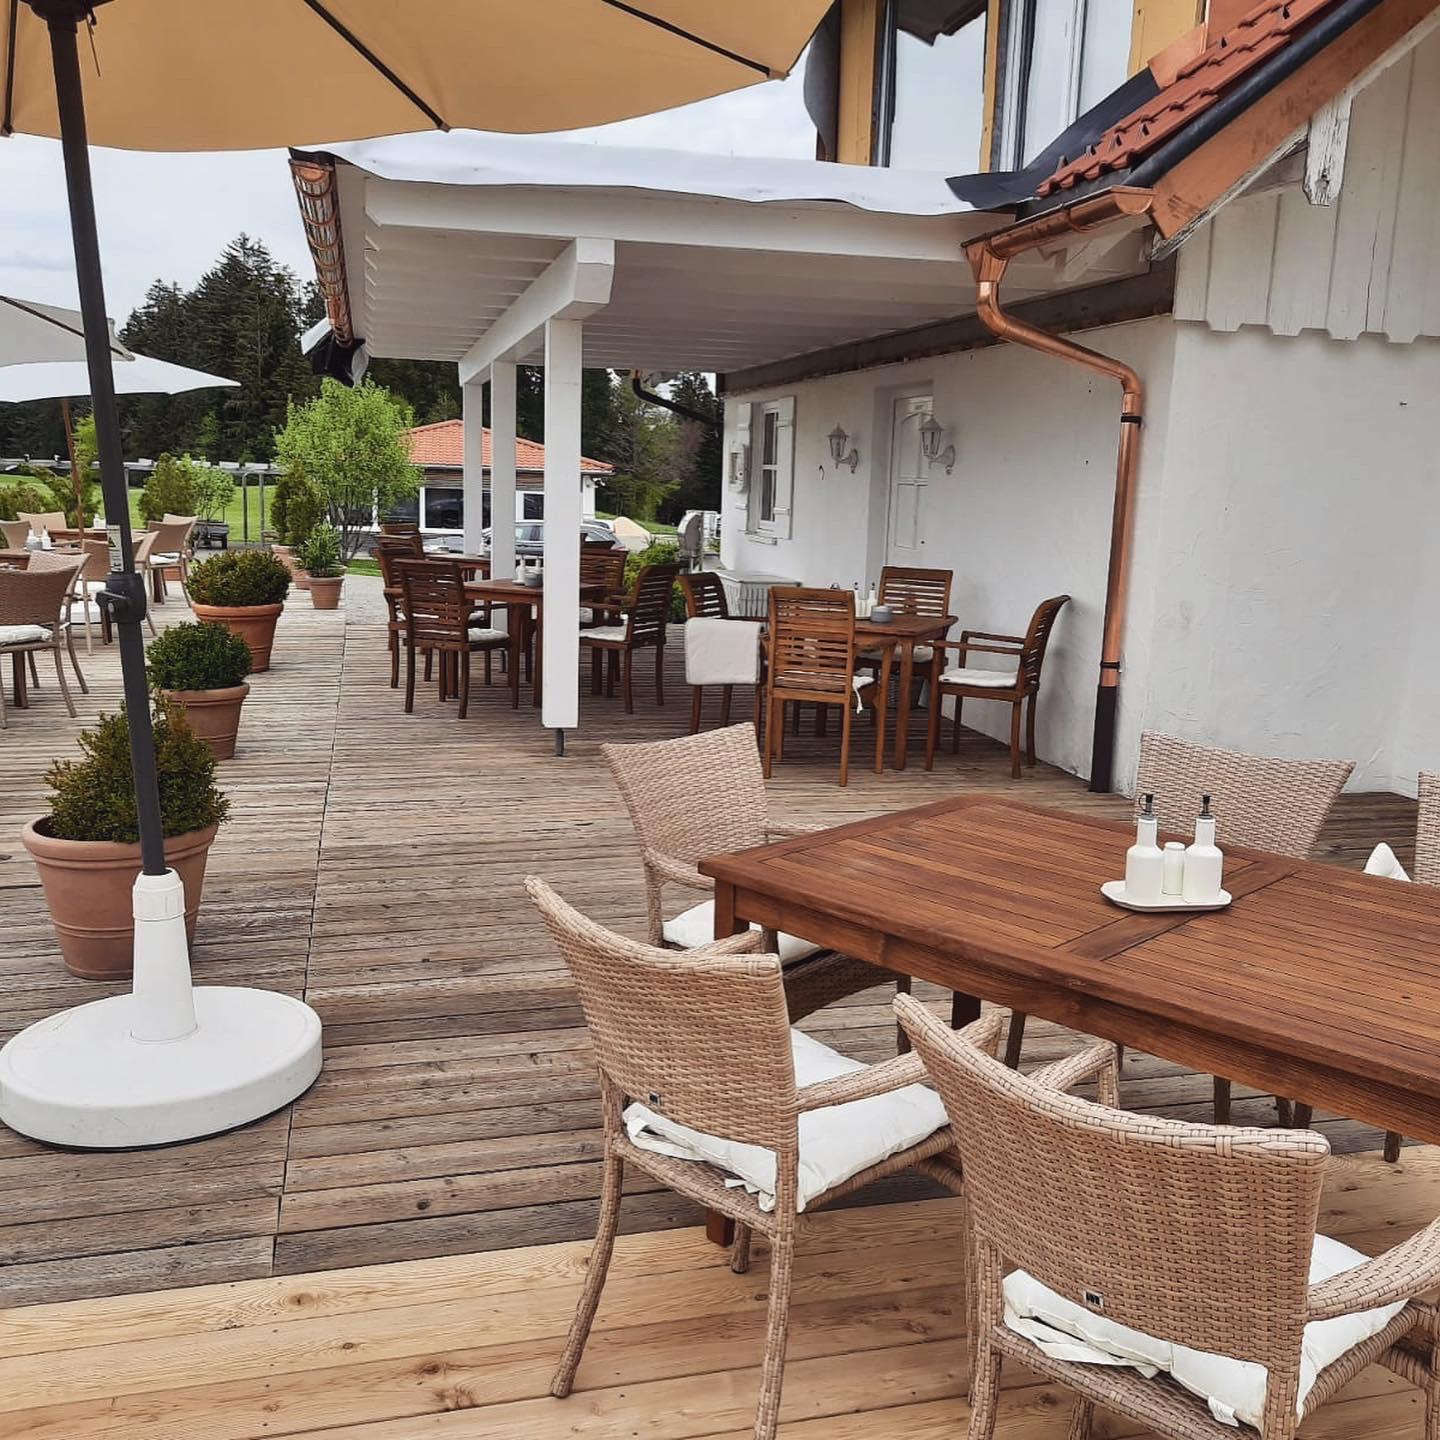 Restaurant "Cafe-Bistro Tante Emma" in Scheidegg